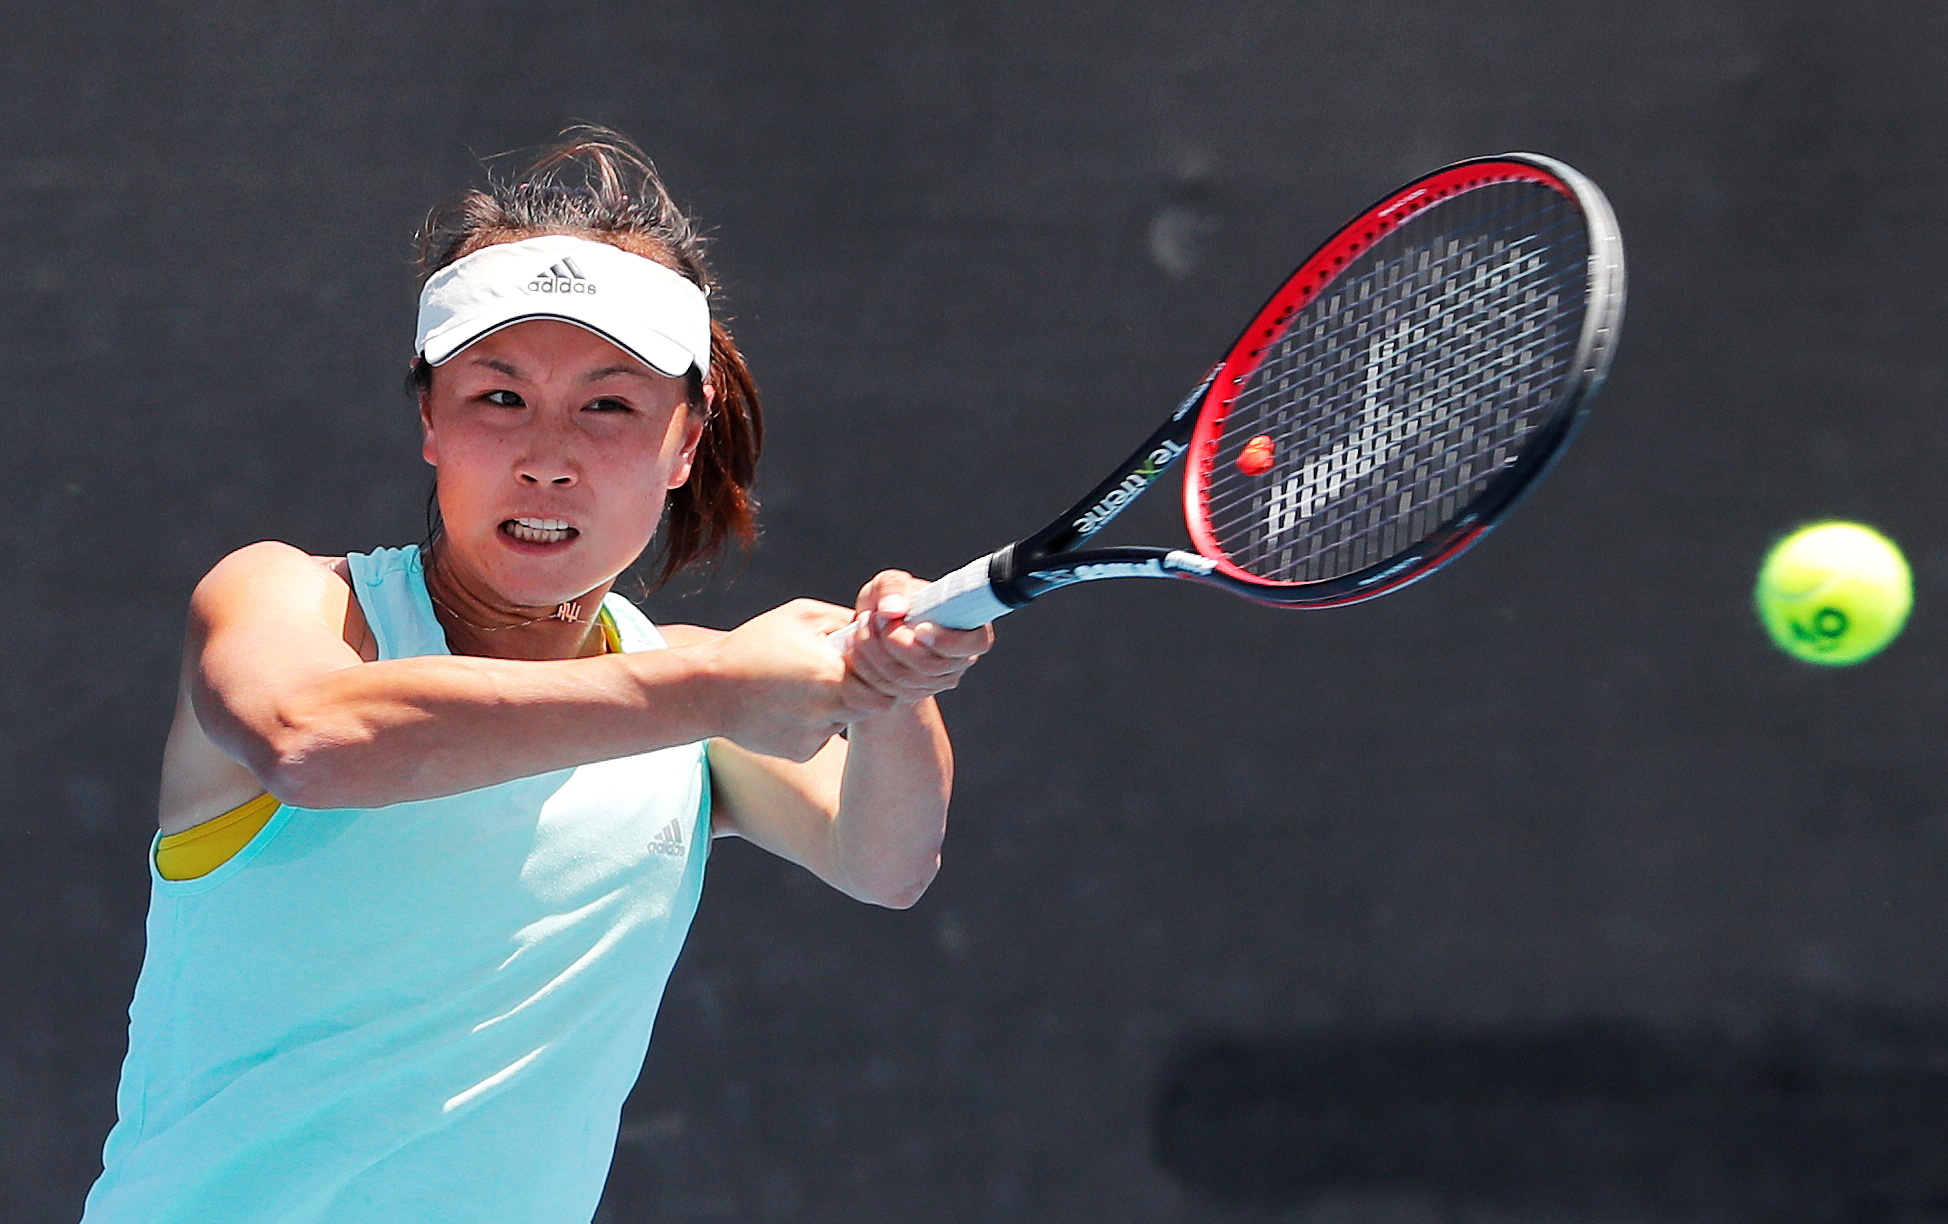 Πενγκ Σουάι: Ο πρόεδρος της WTA ανησυχεί για την Κινέζα τενίστρια